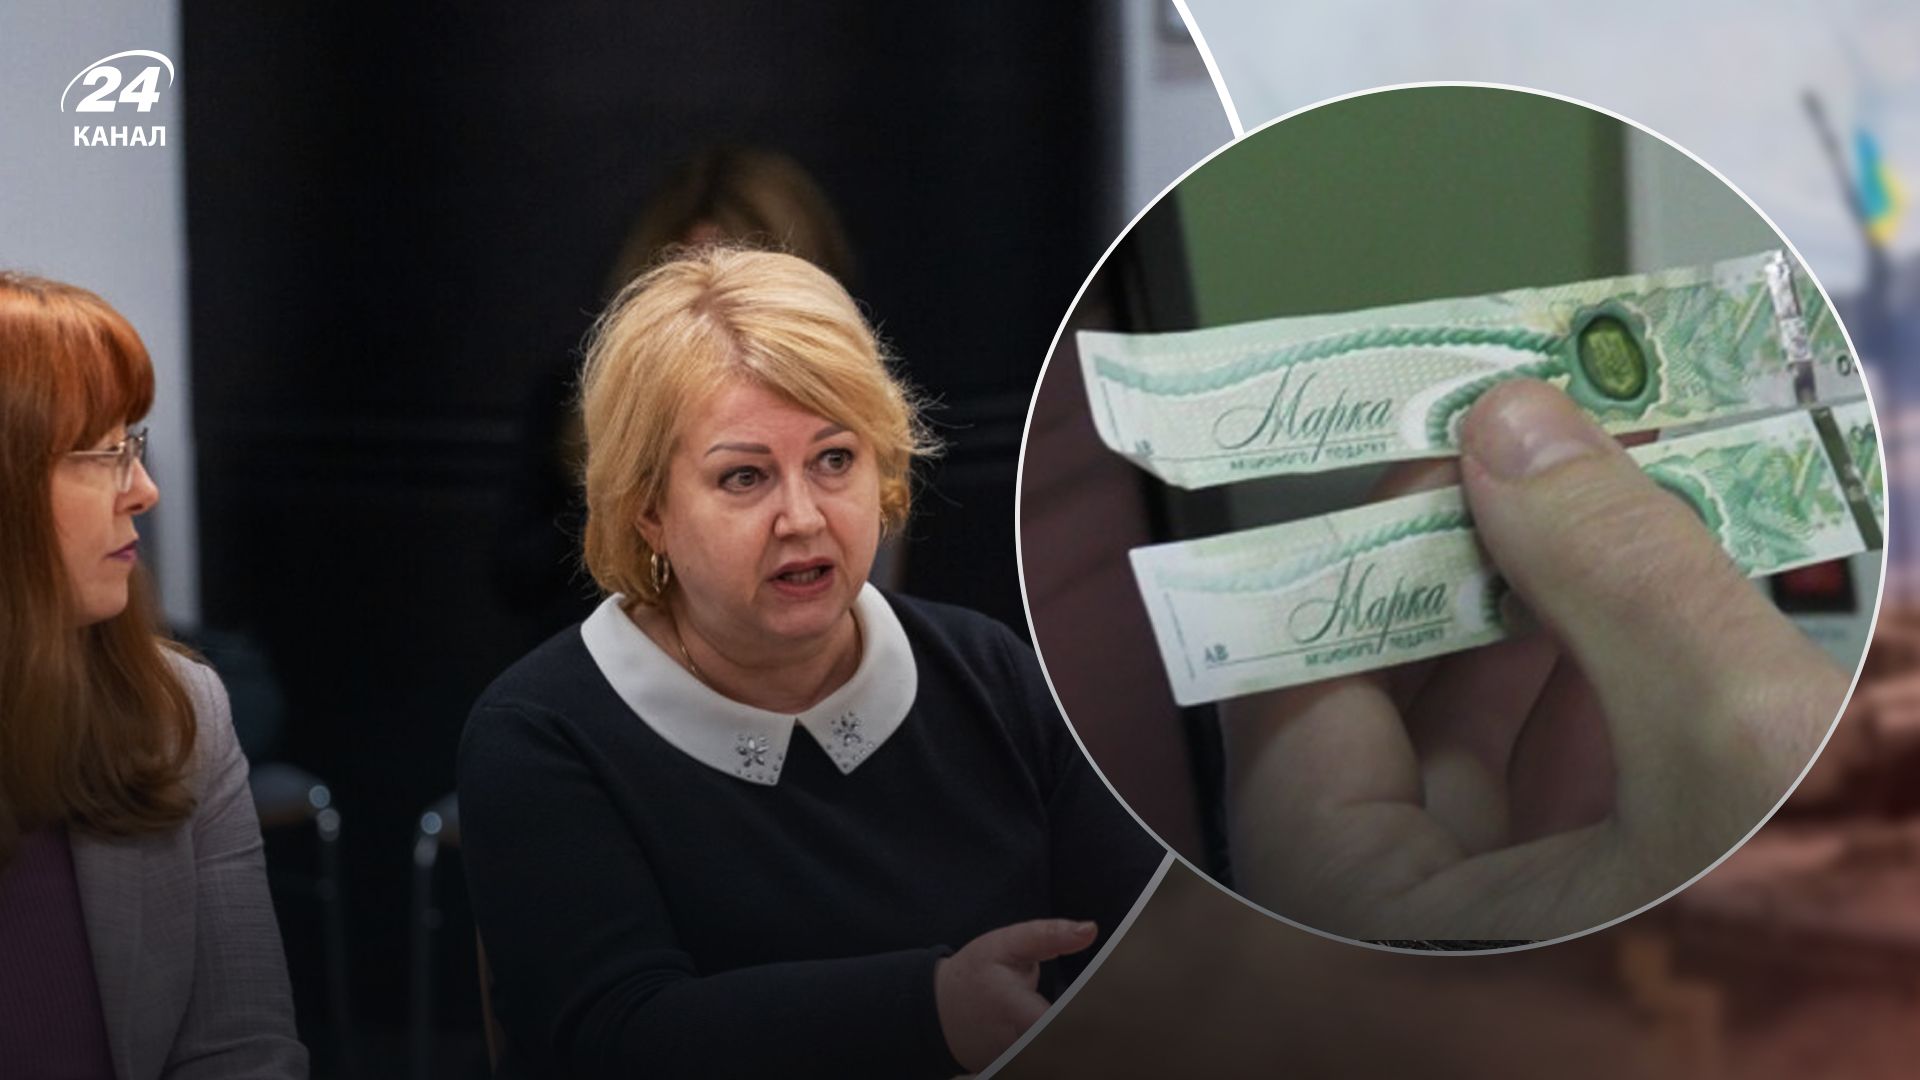 Поліграфкомбінат "Україна" лобіює голограми для акцизних марок в інтересах колишнього ЄДАПС